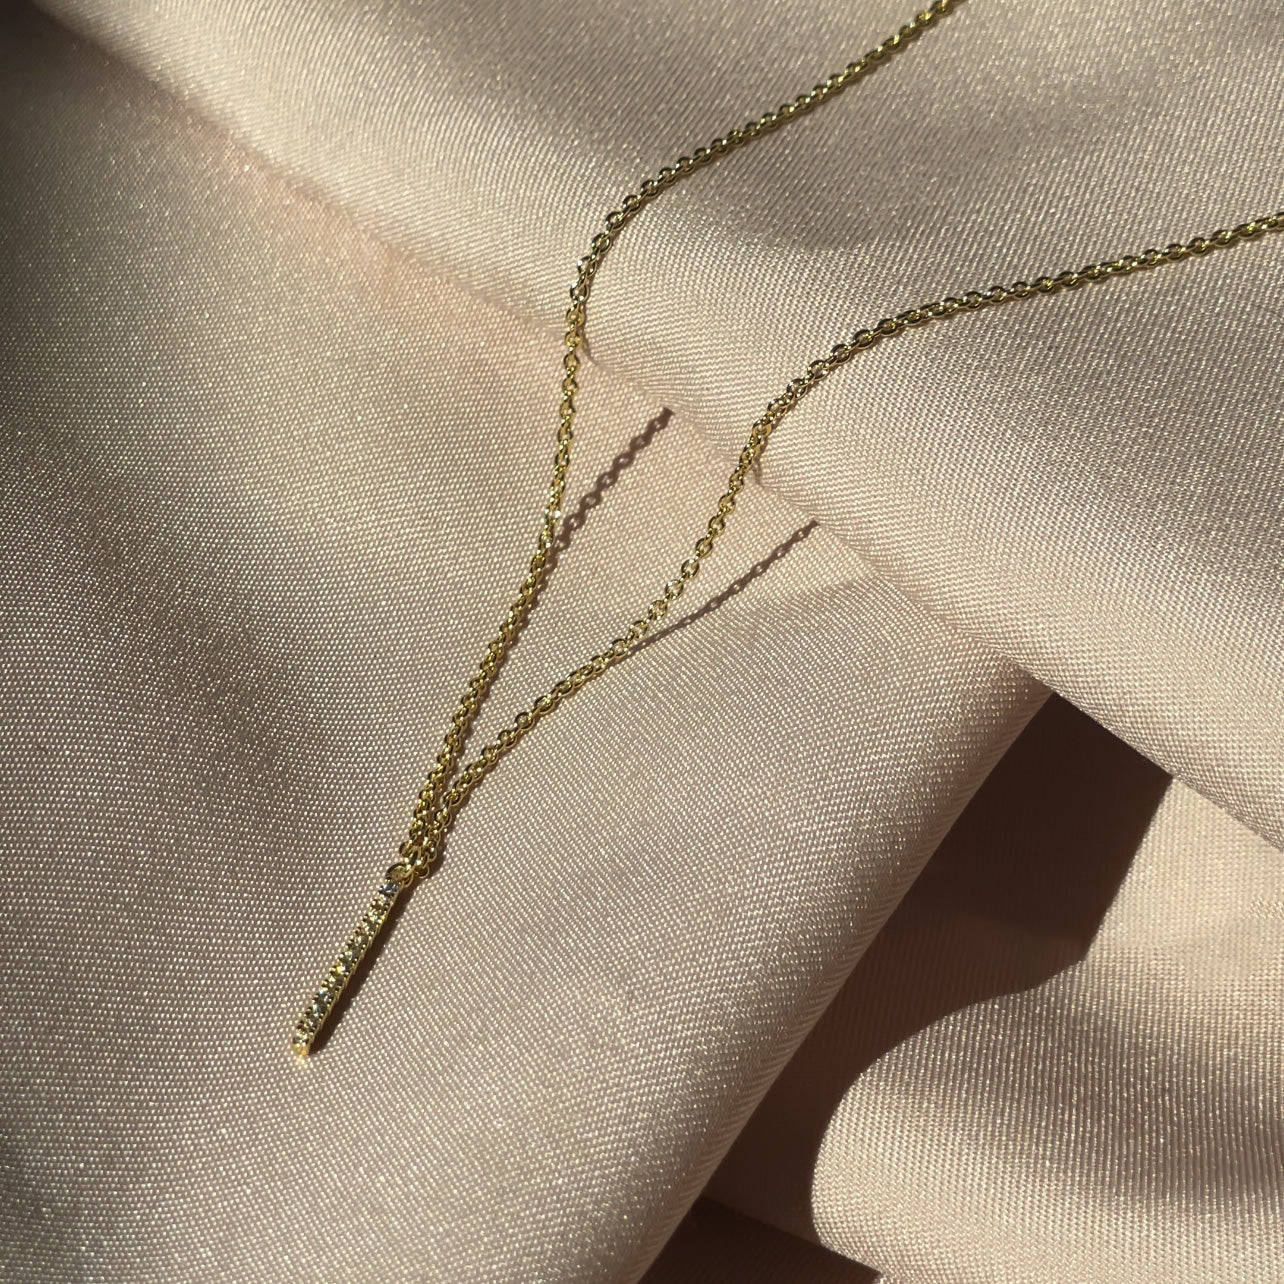 Mejuri Gold Vermeil Chain Necklaces: Chain Extender Vermeil